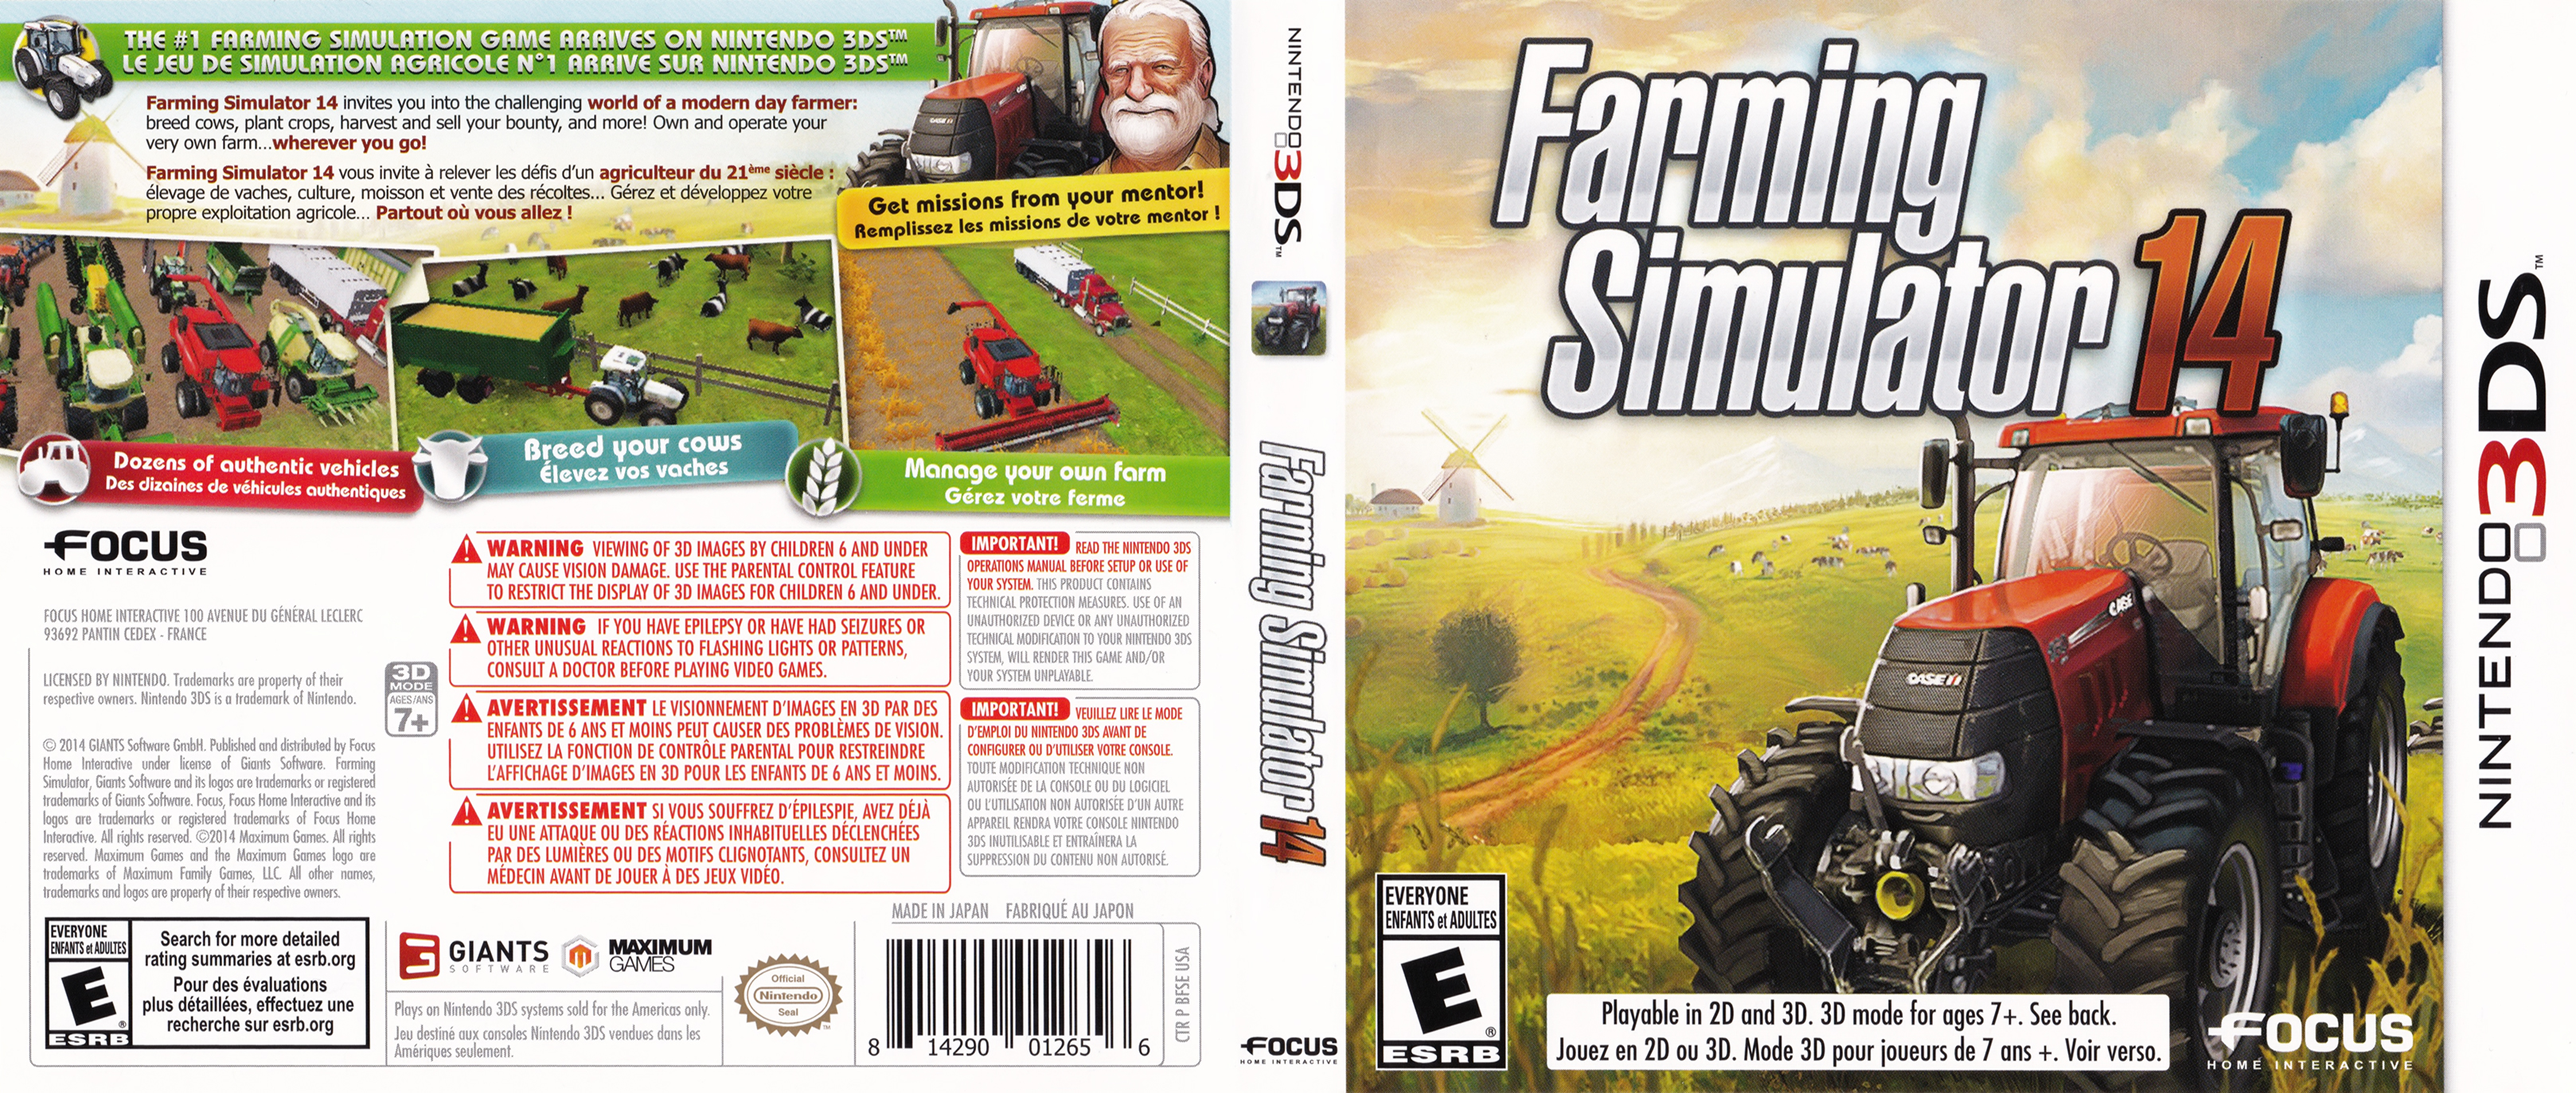 3ds_farmingsimulator14.jpg